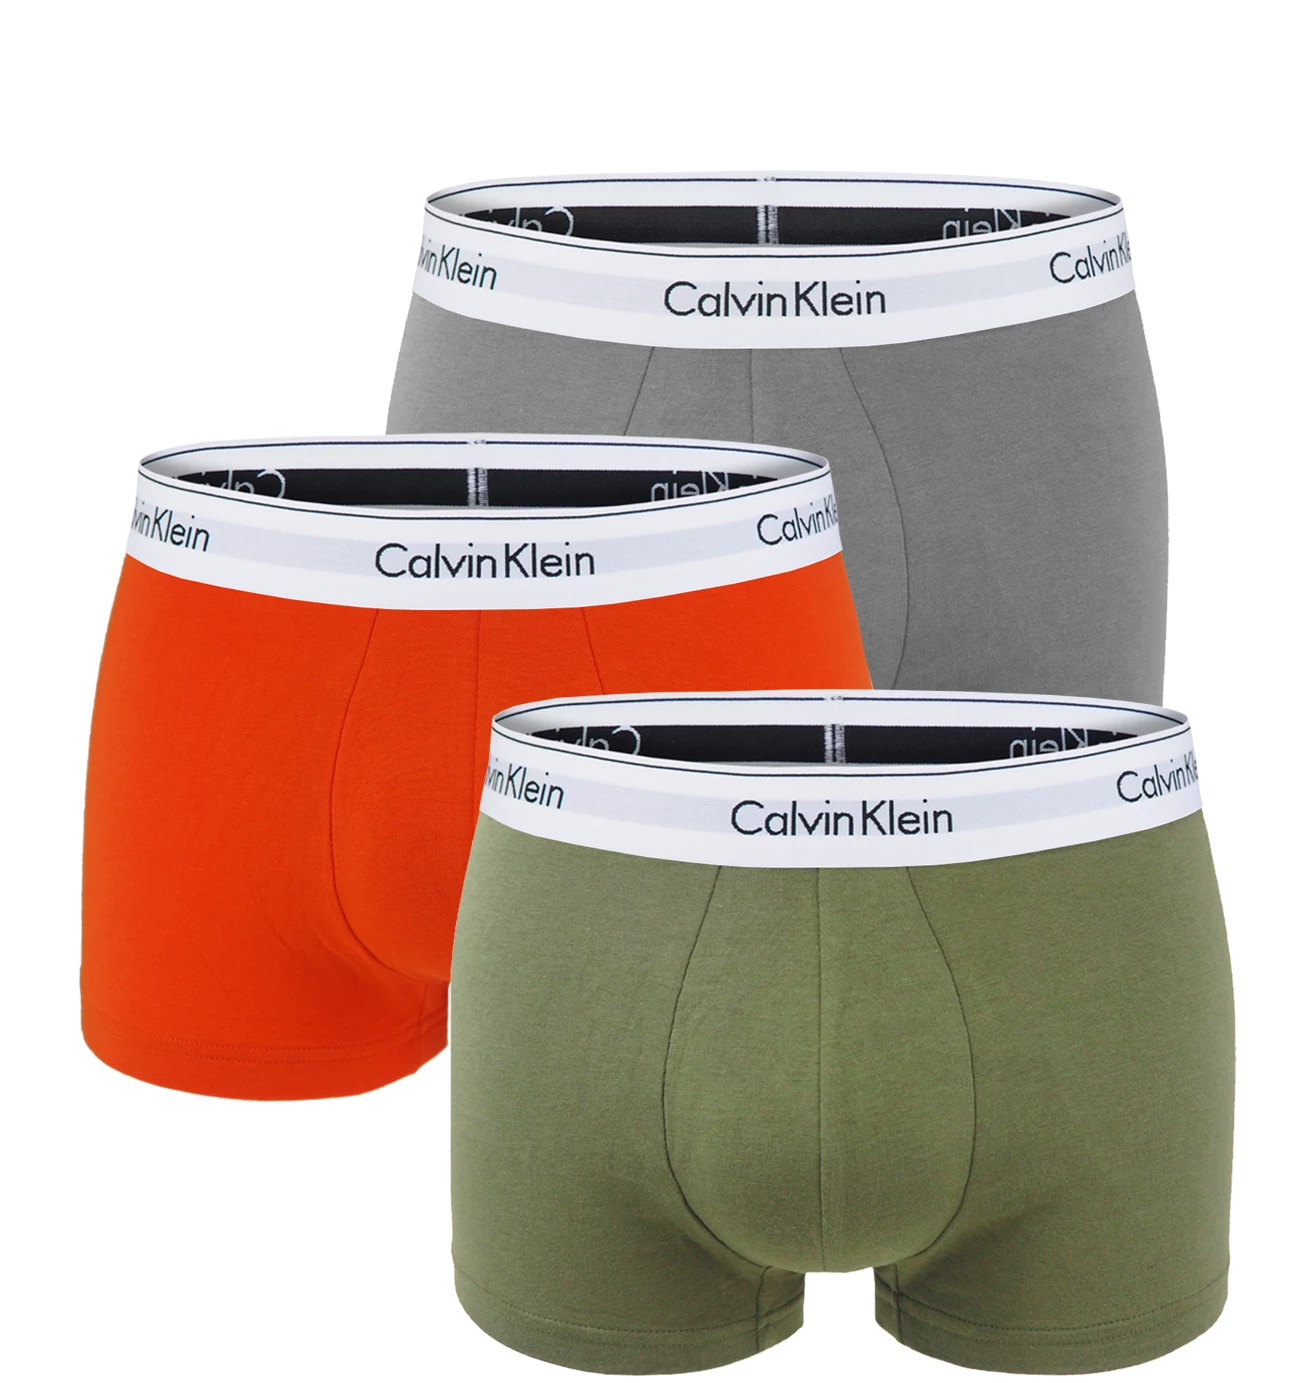 Calvin Klein - boxerky 3PACK cotton stretch army green color - limitovaná edícia